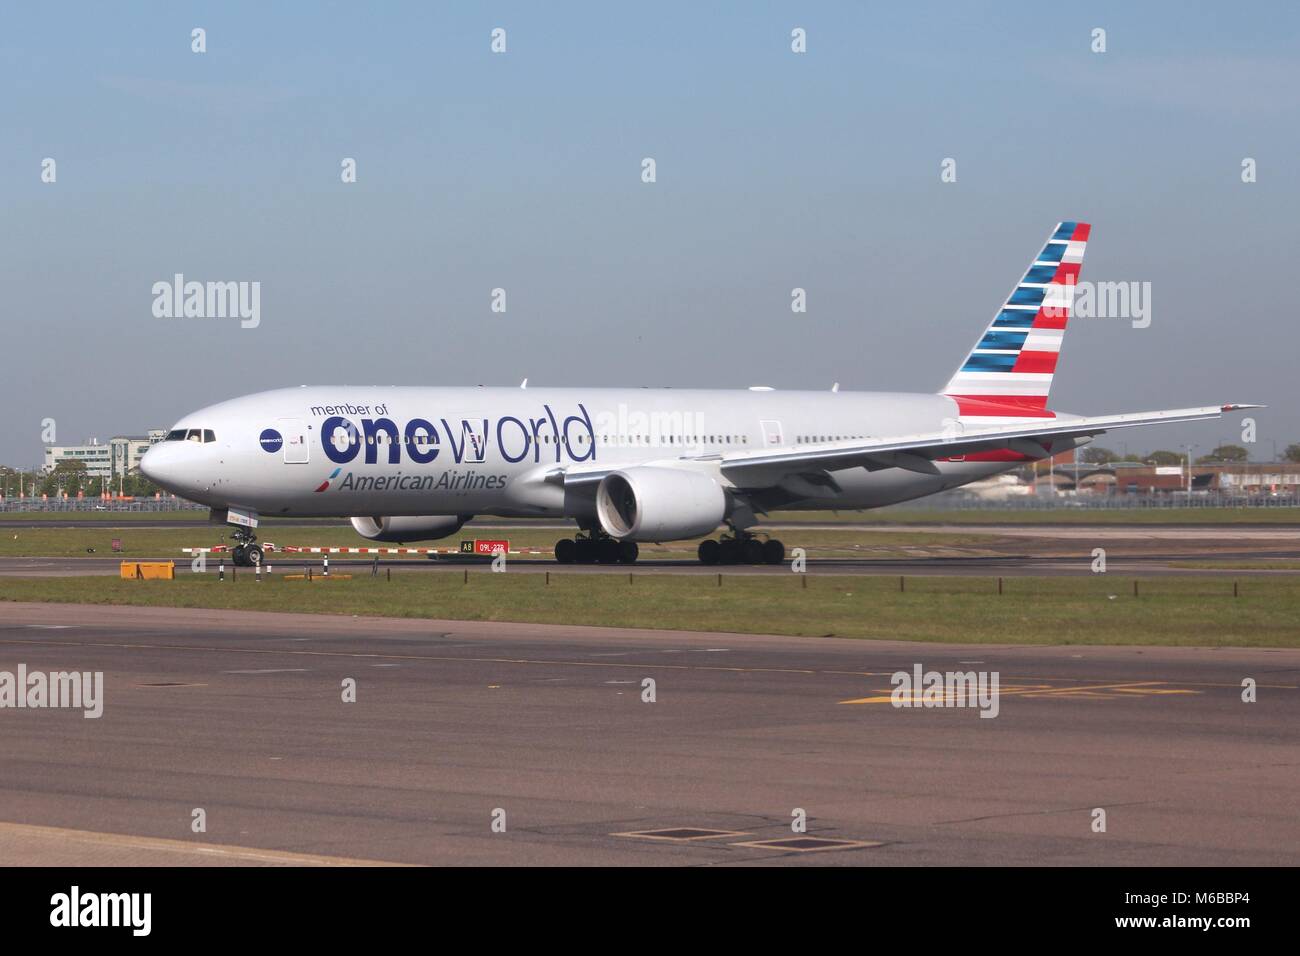 LONDON, Regno Unito - 16 Aprile 2014: American Airlines Boeing 777 in alleanza Oneworld livrea dopo l'atterraggio all'aeroporto di Londra Heathrow. Oneworld trasporta più Foto Stock